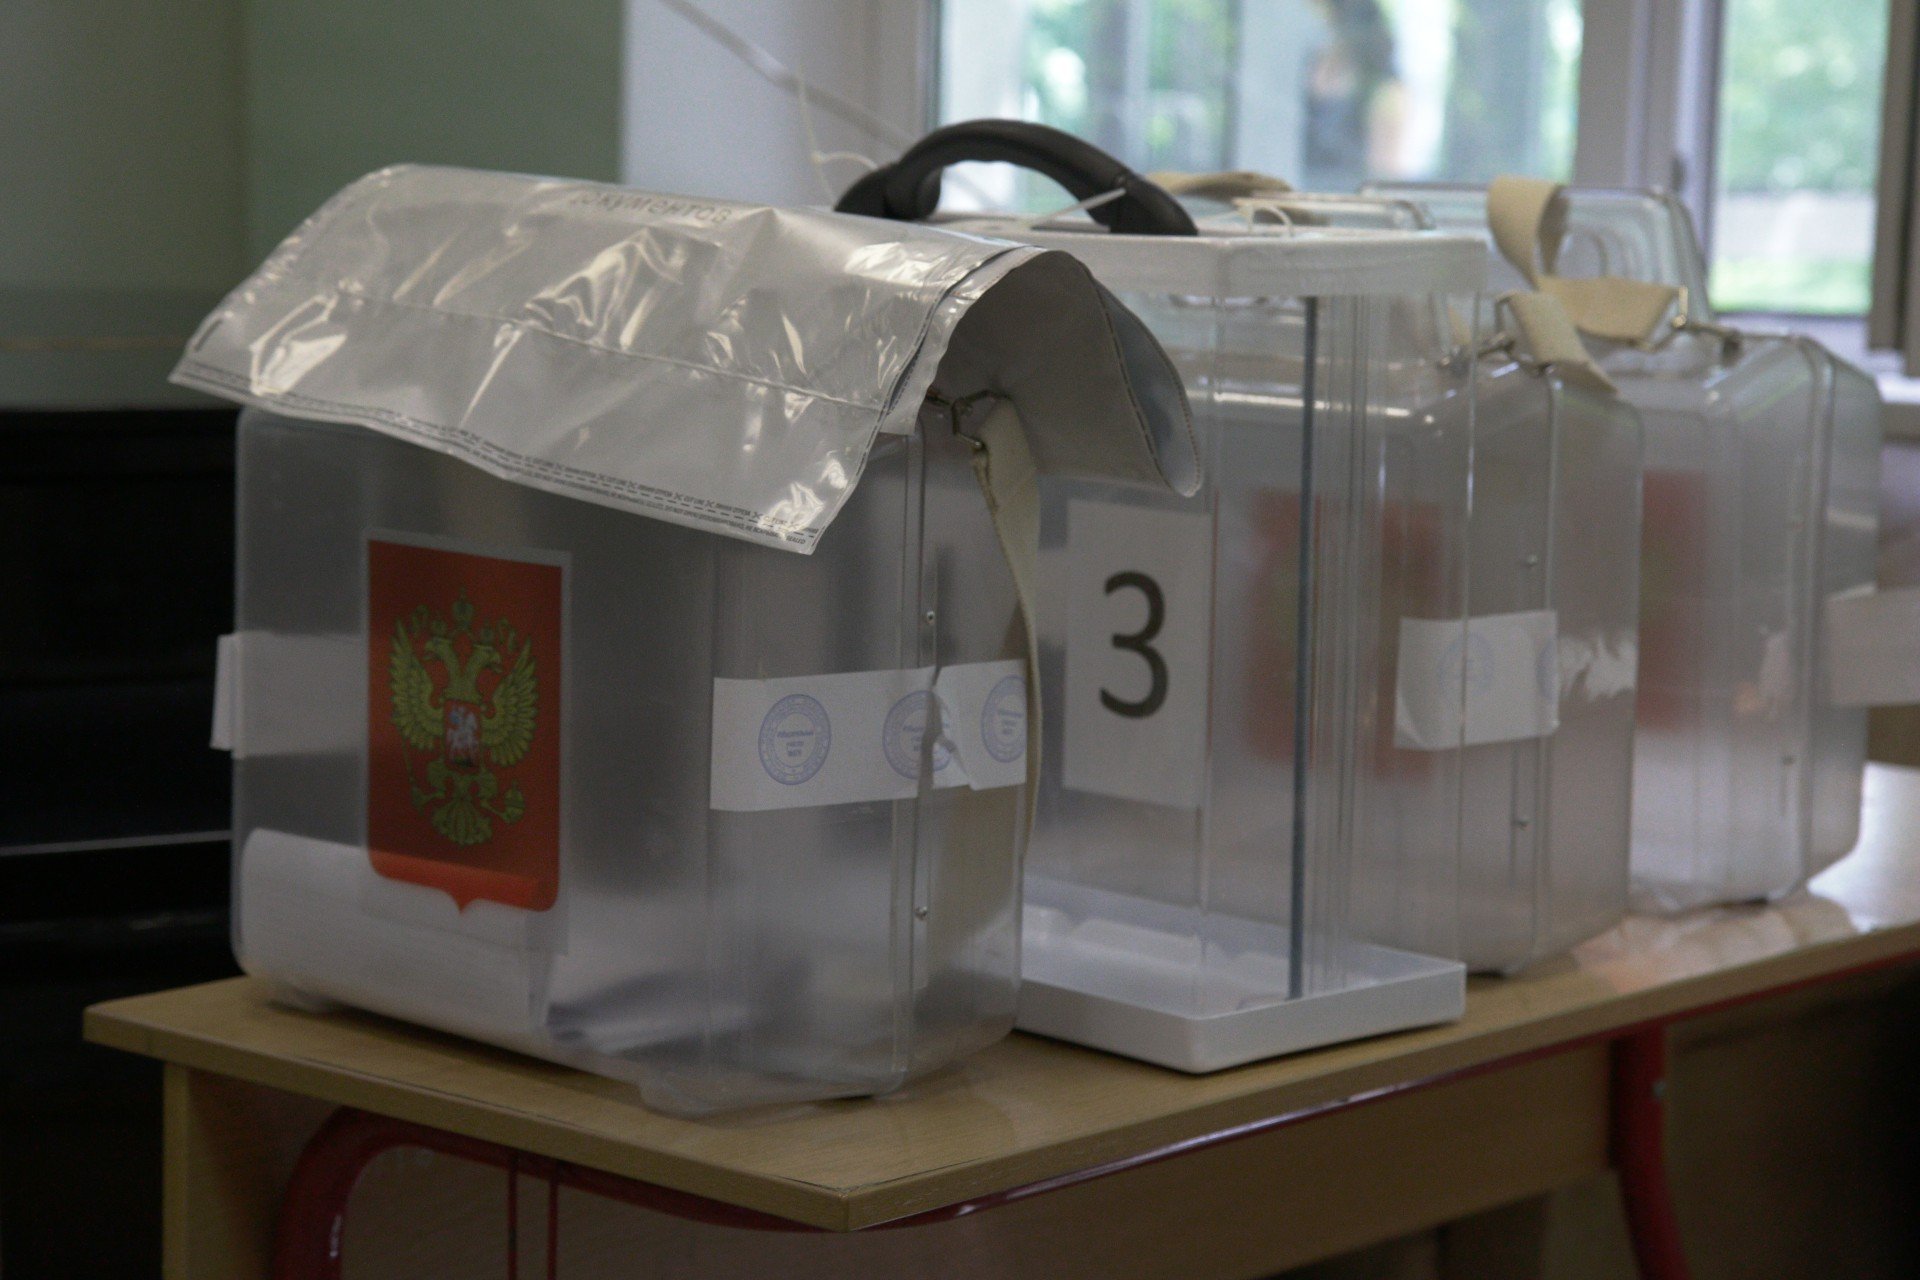 Урны для надомного голосования. На одной из них надорвана печать. Фото: Светлана Виданова / «Новая газета»